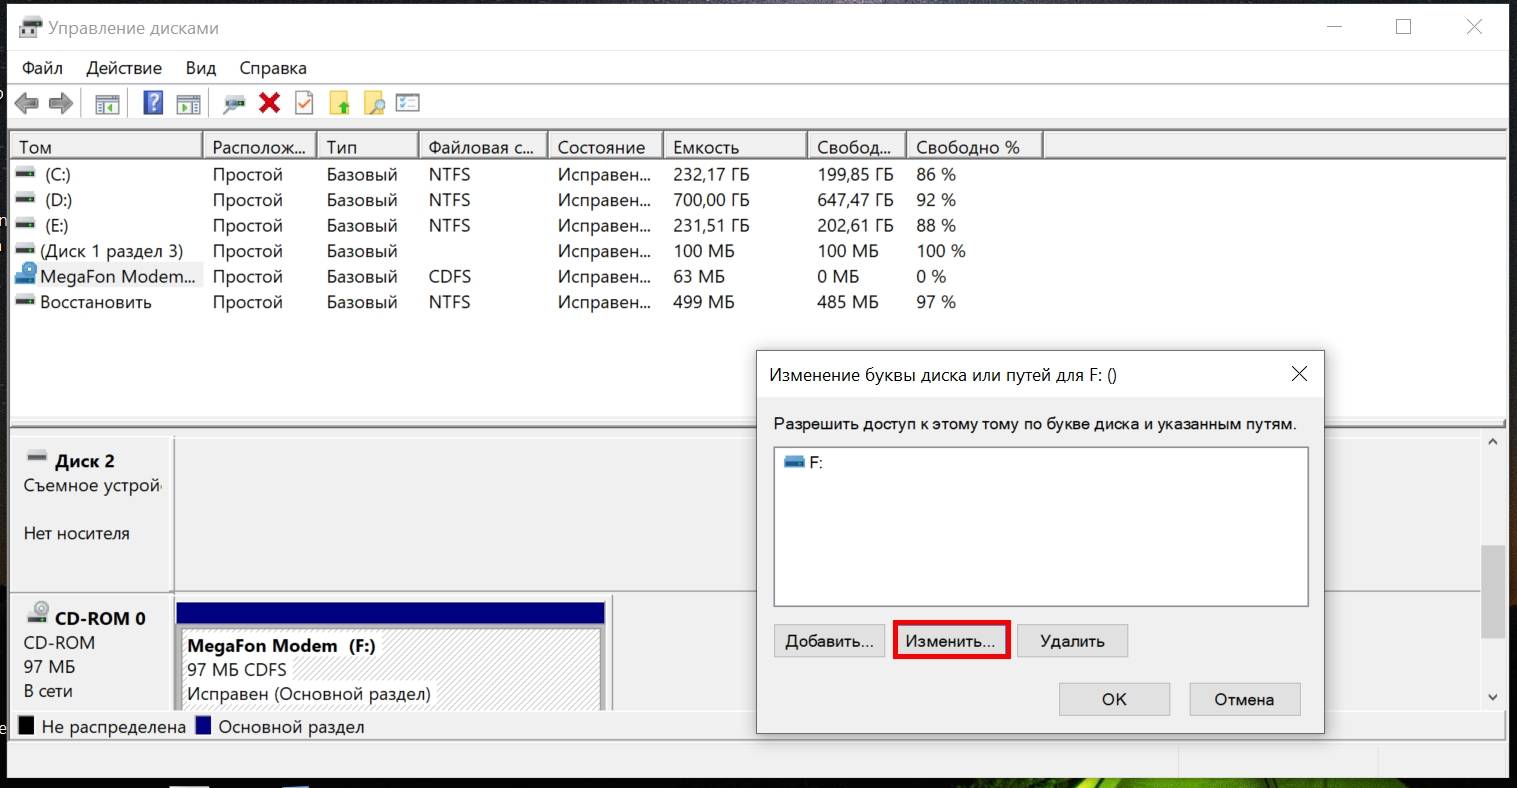 Буква жесткого диска в Windows 10. Как присвоить букву жесткому диску. Как изменить букву диска в Windows. Как переименовать диск. Сжать том неперемещаемые файлы